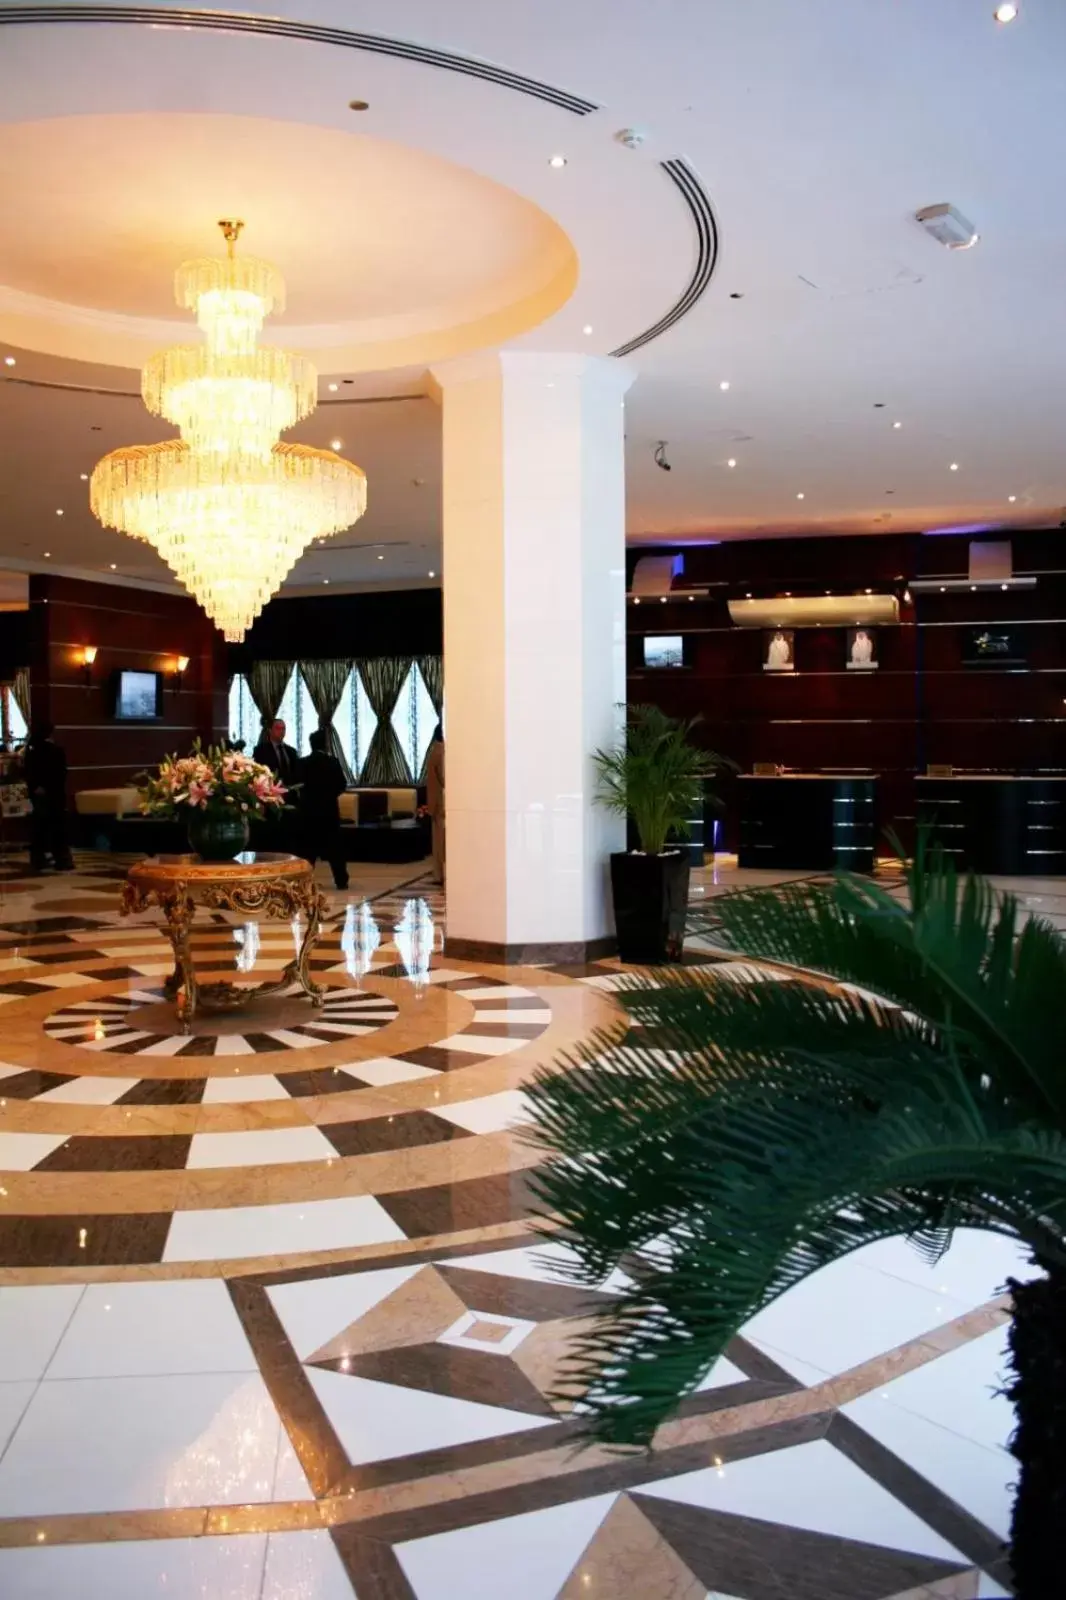 Lobby or reception, Lobby/Reception in Horizon Manor Hotel